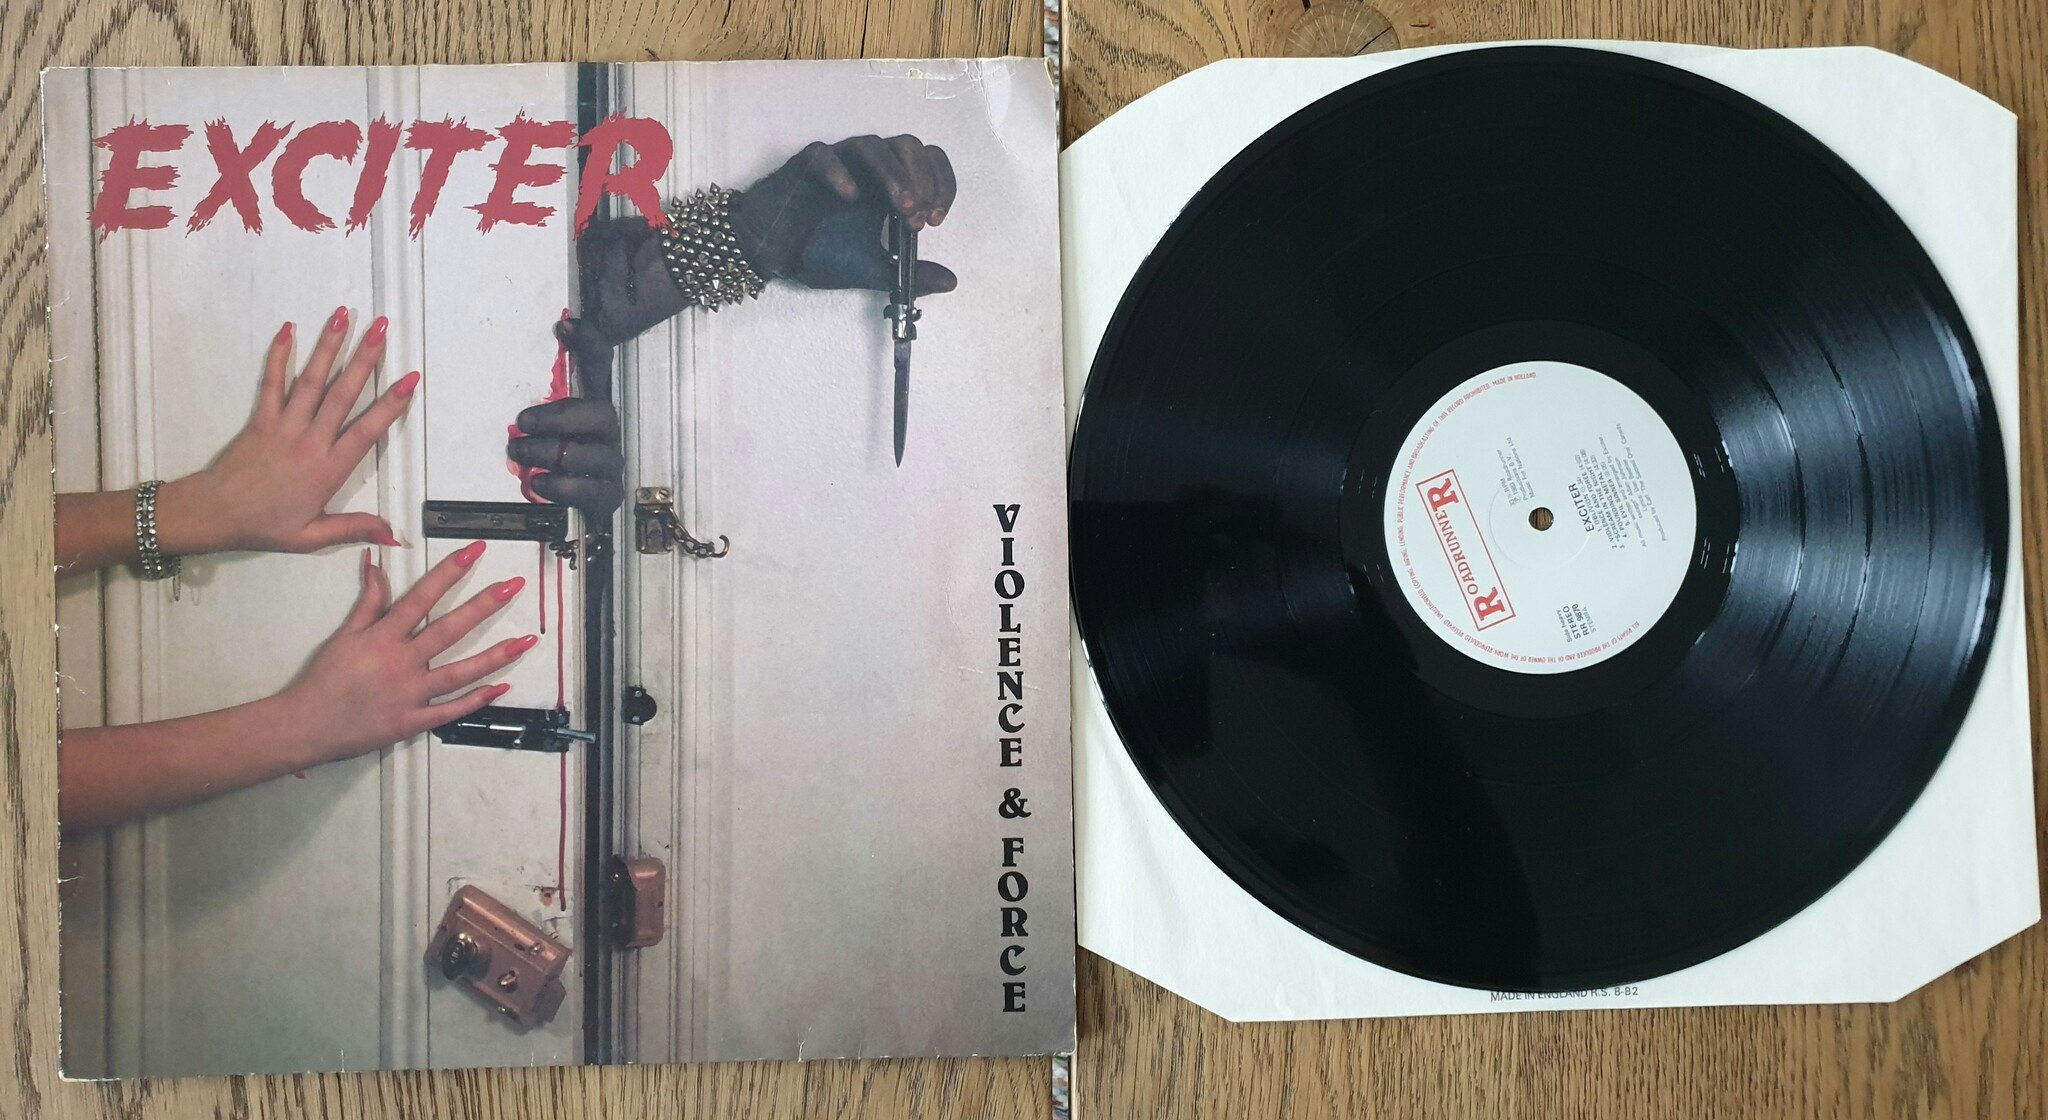 Exciter, Violence & Force. Vinyl LP